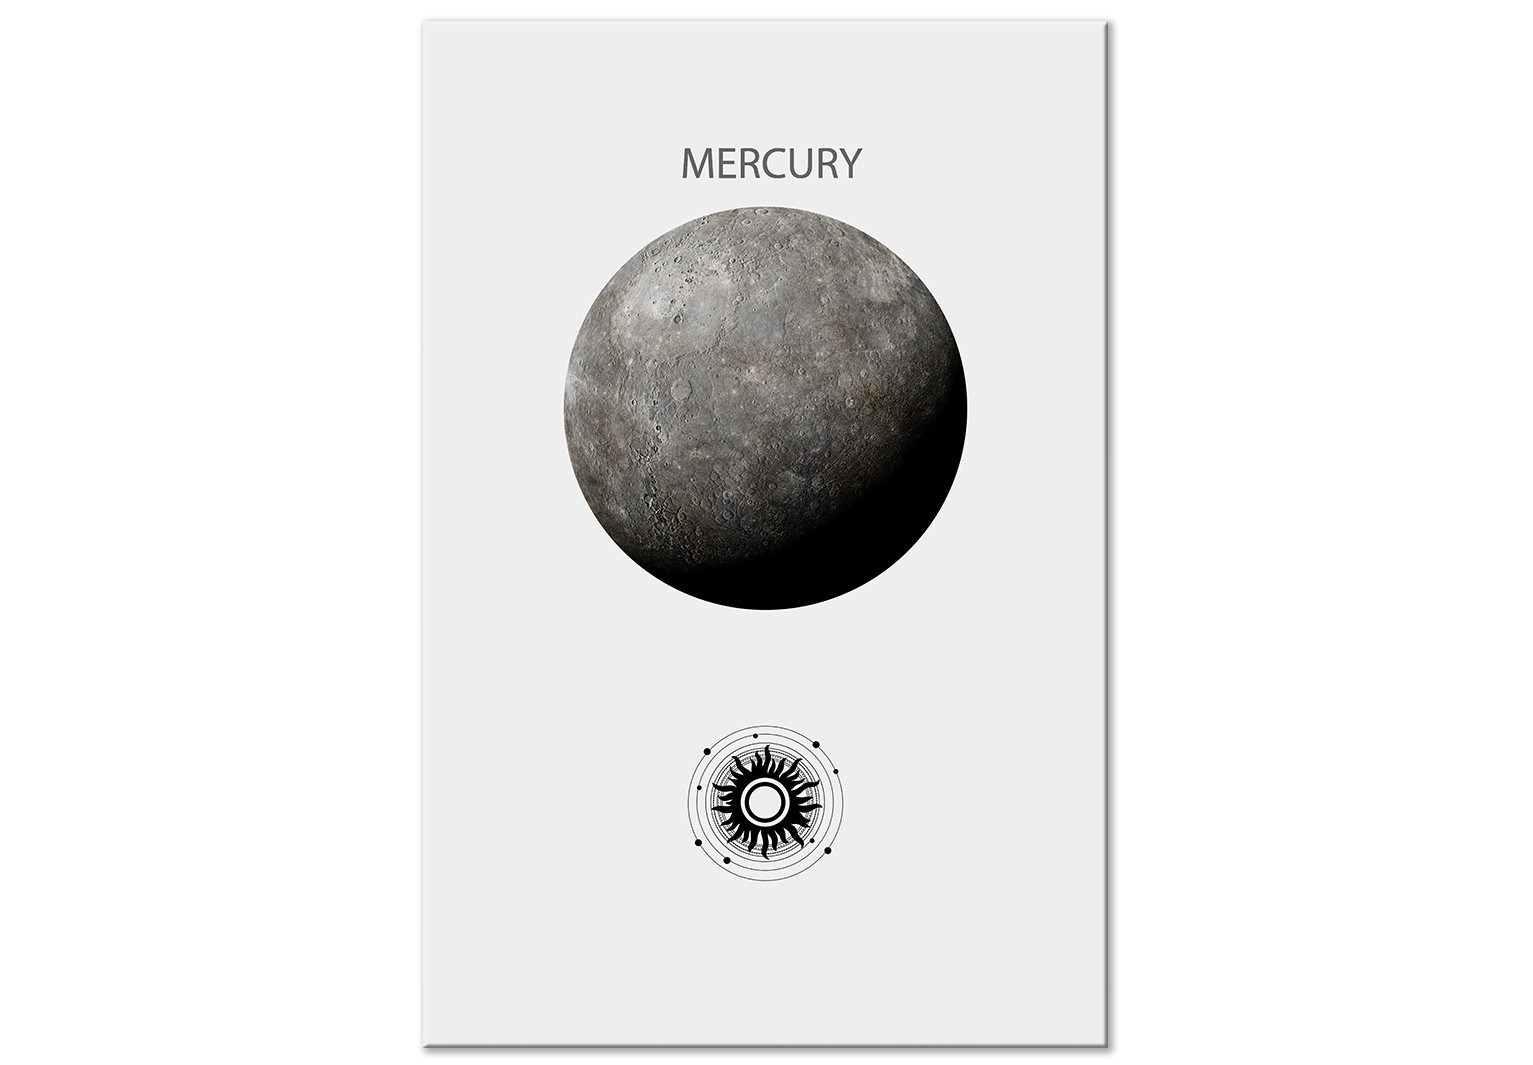 Mercury Planet Drawing Images - Free Download on Freepik